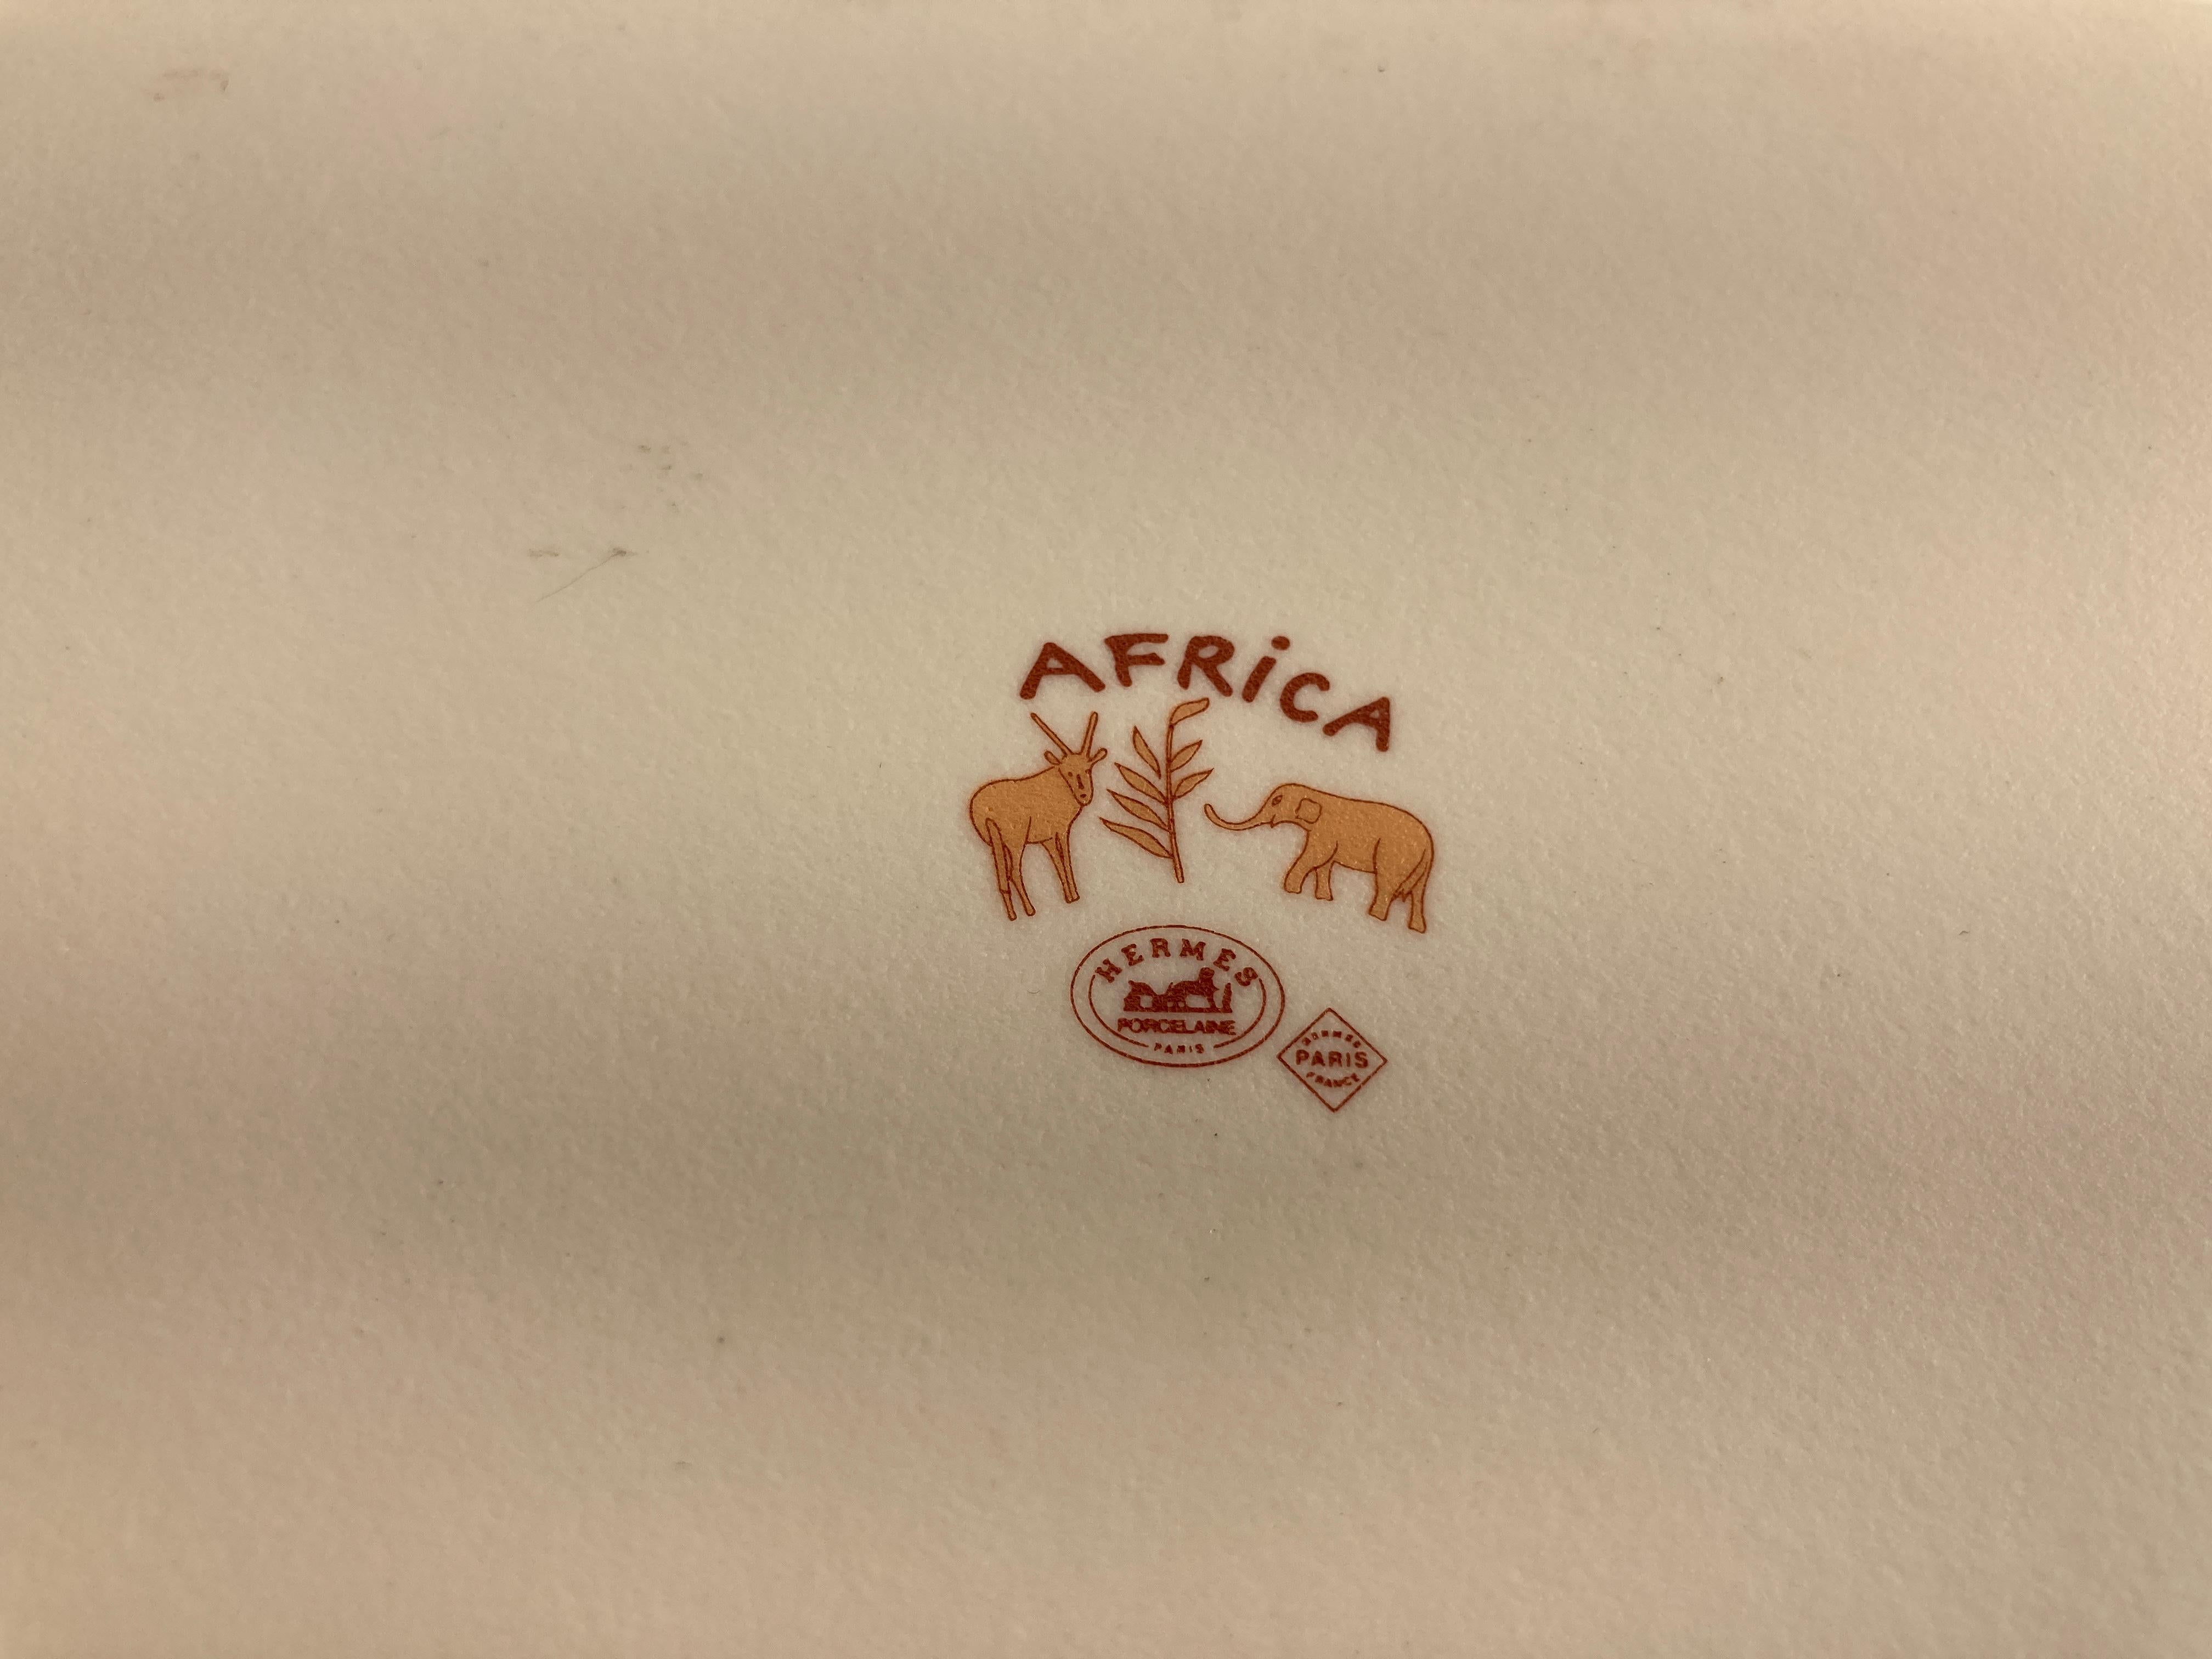 Hermes Porcelain Trinket Dish with Africa Orange Safari Design 6